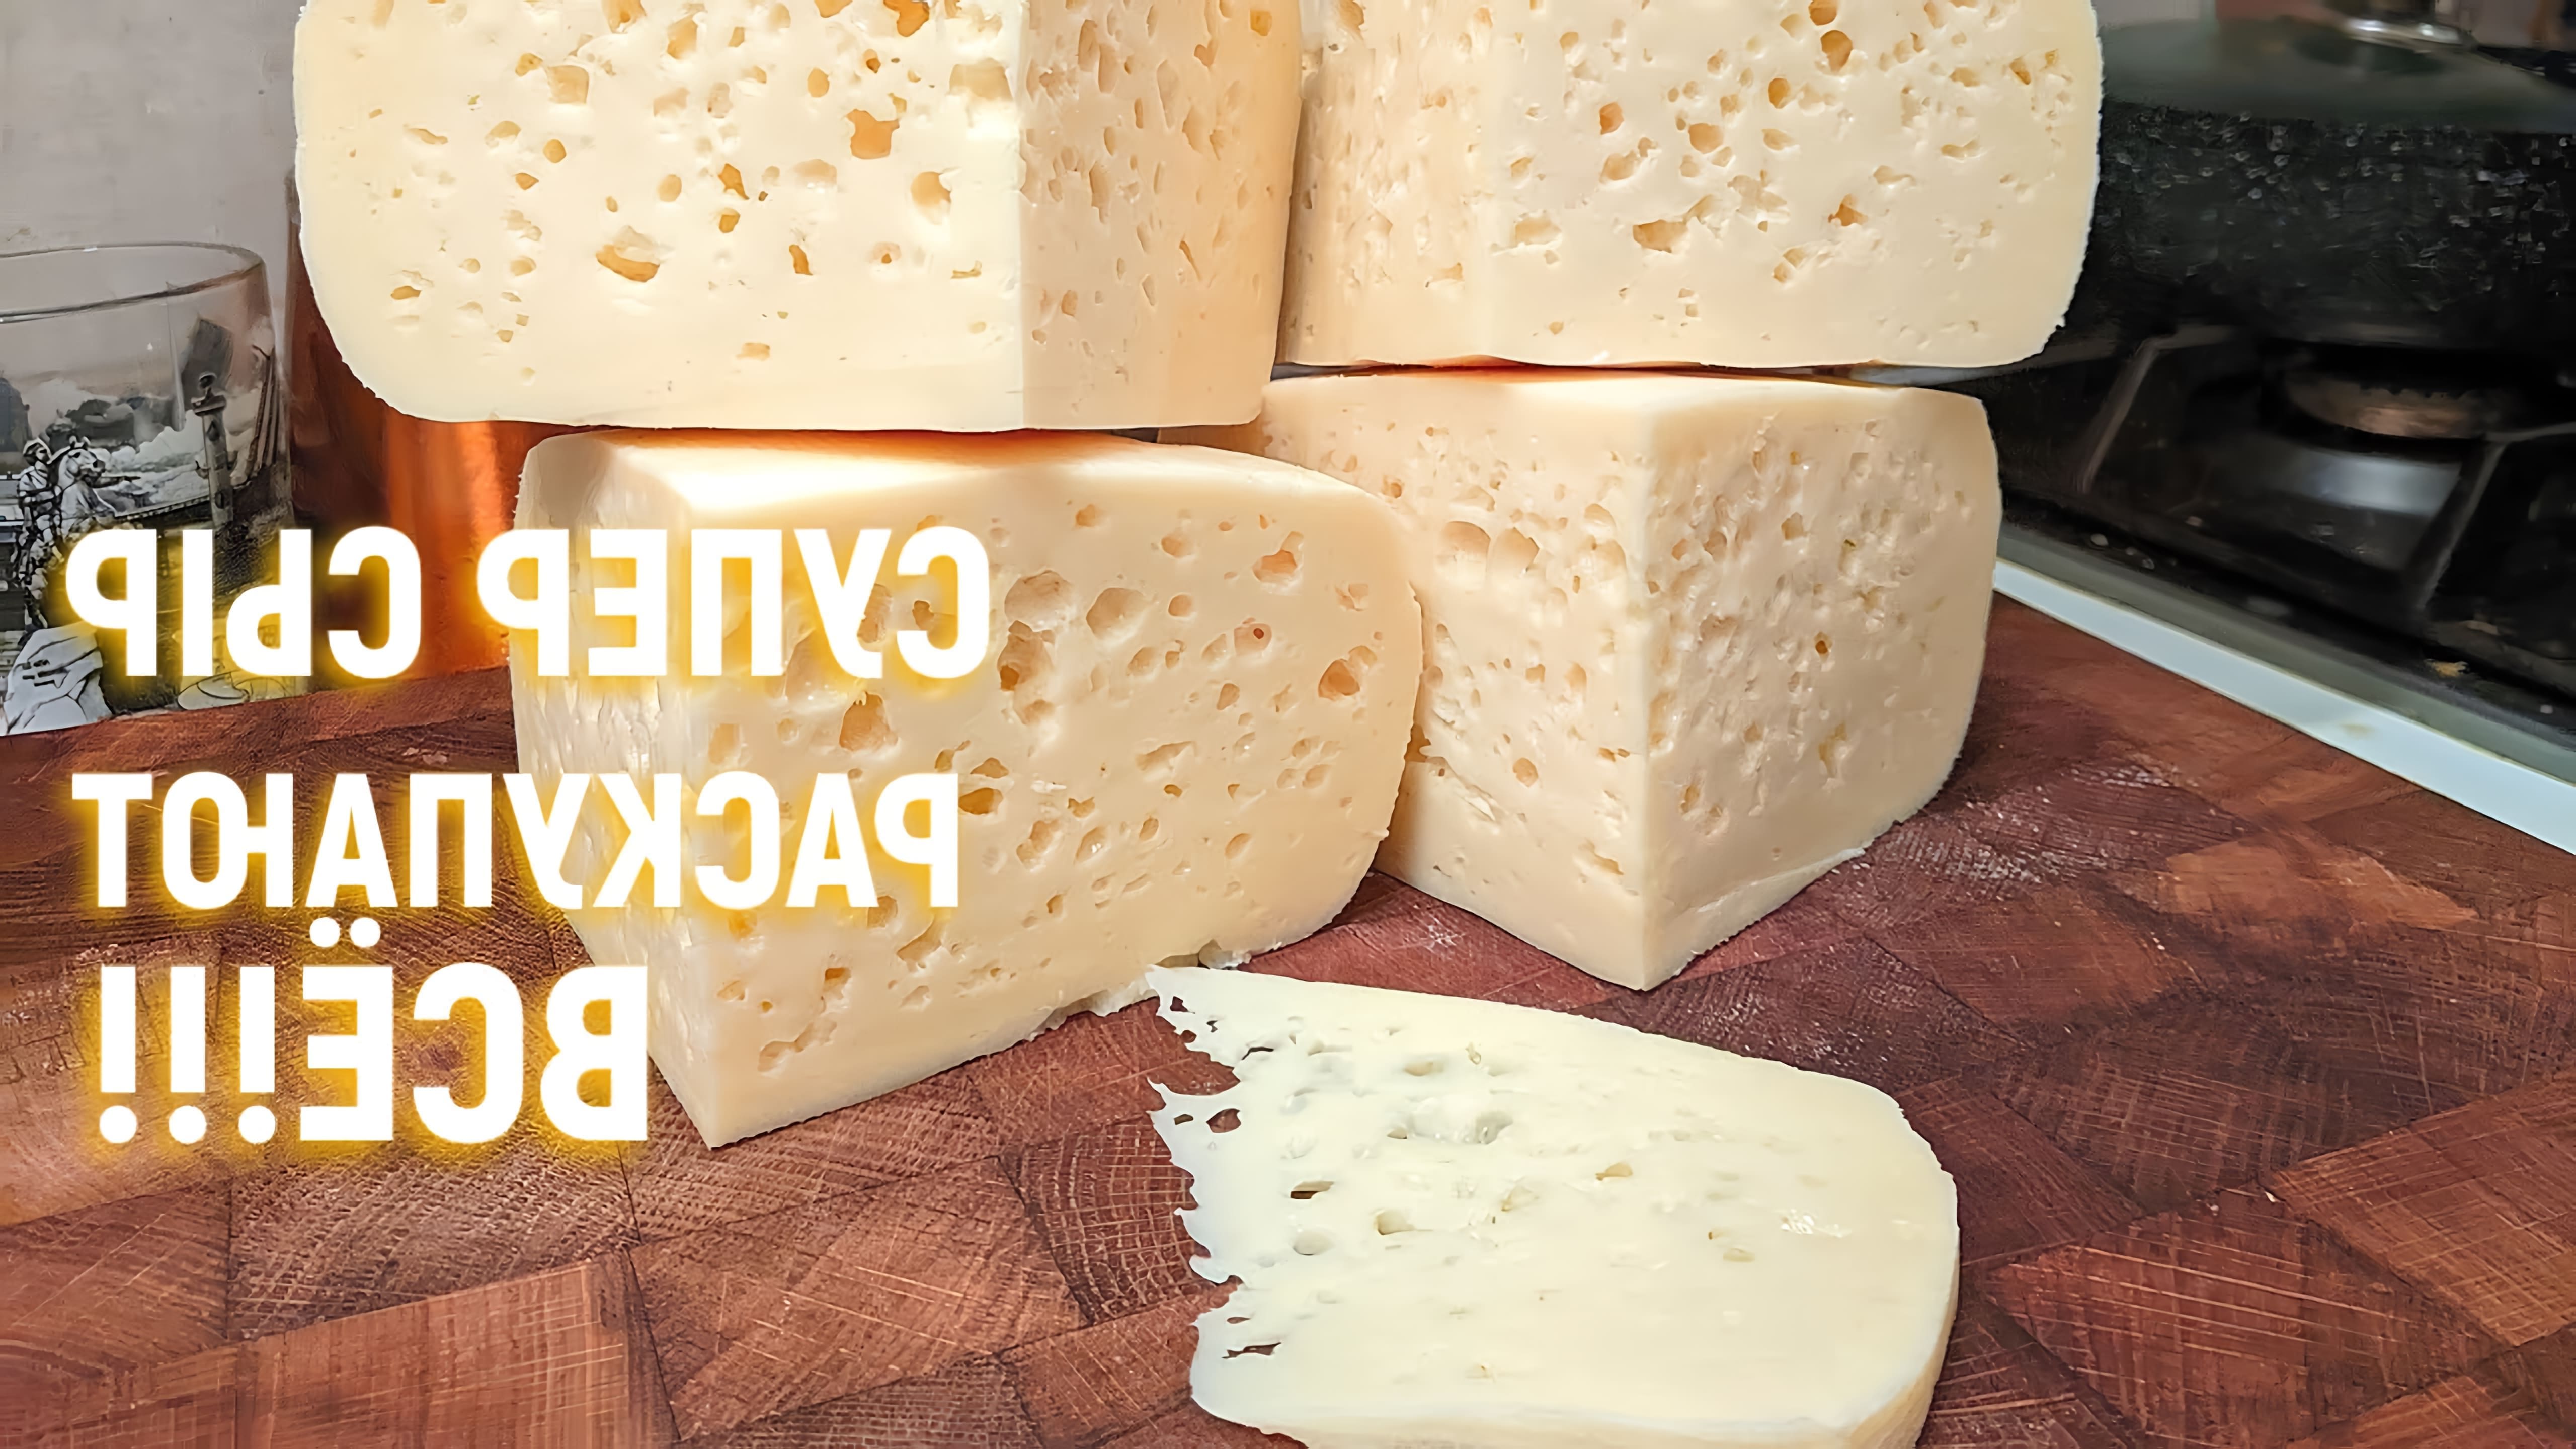 В данном видео демонстрируется процесс приготовления домашнего сыра на основе рецепта российского сыра